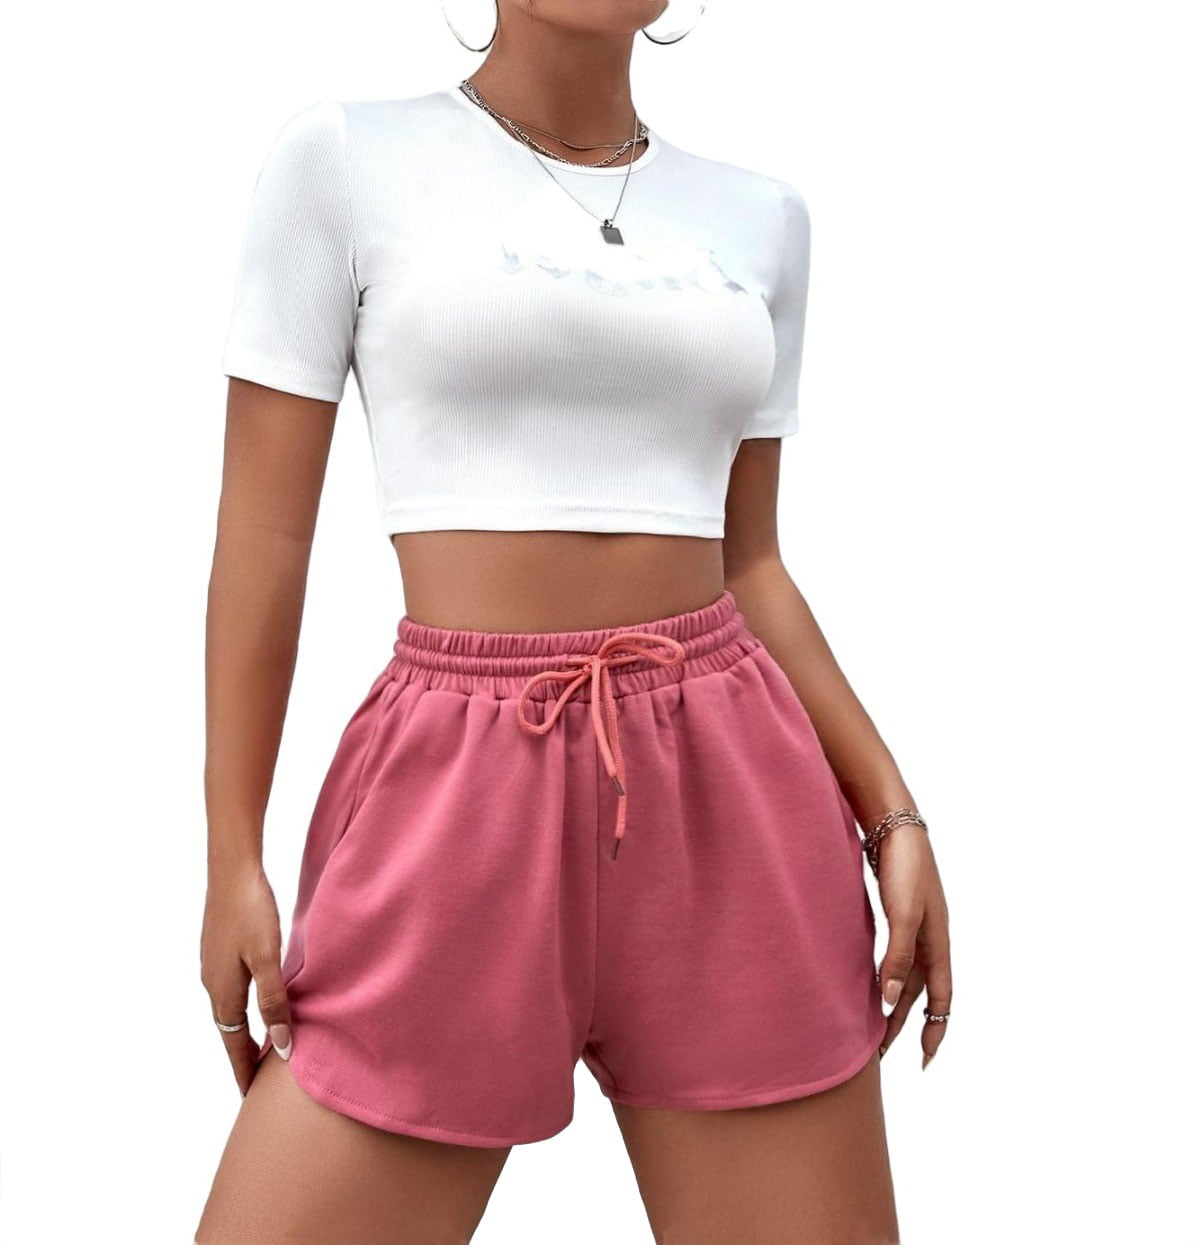 Checked Out Hot Pink Drawstring Shorts